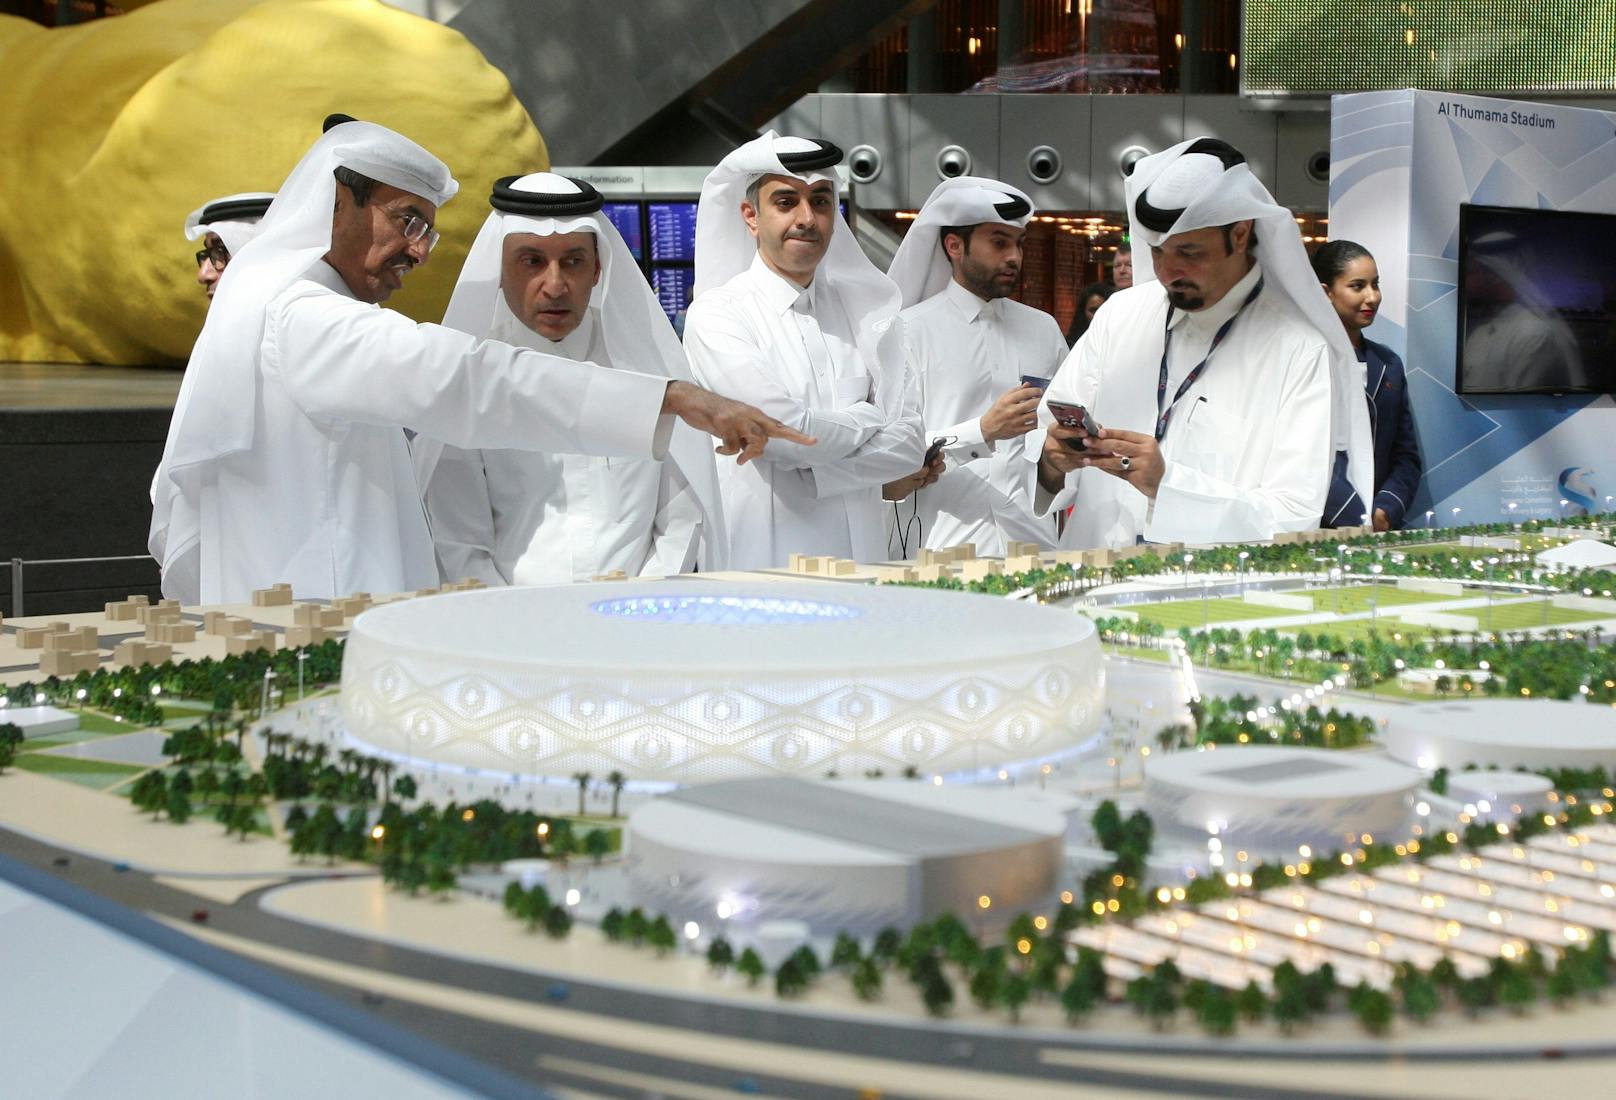 Das Design des Stadions&nbsp;Al Thumama in Doha stellt die Gahfiya dar – eine traditionelle gewebte Mütze, die von jungen Burschen und Männern im Nahen Osten getragen wird.